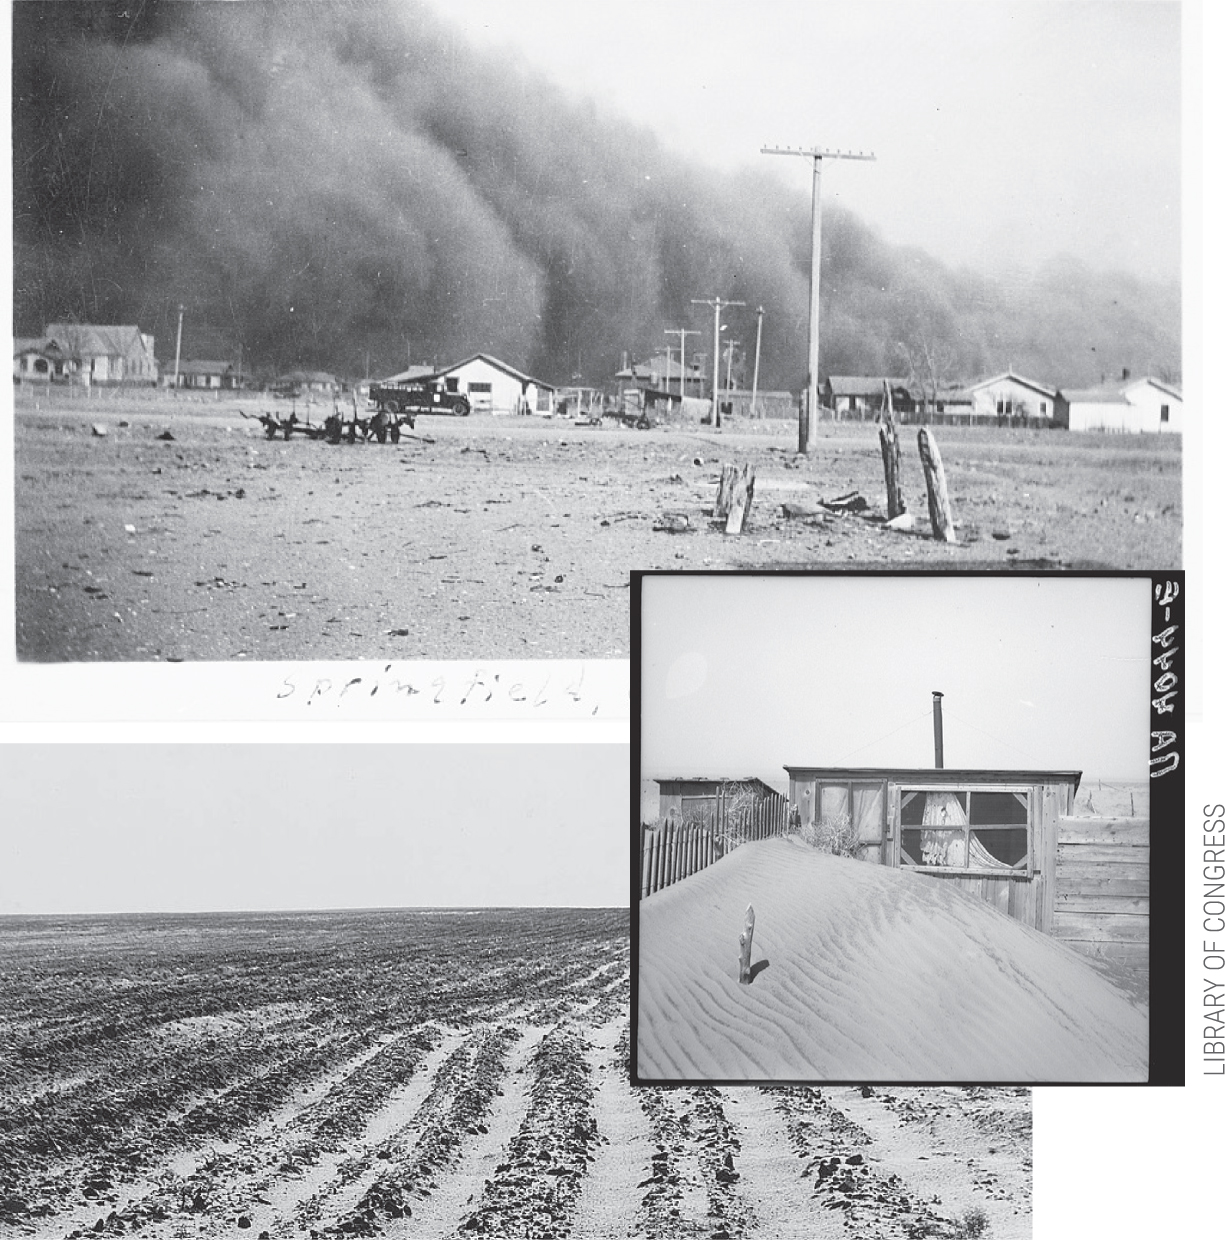 Sự kiện Dust Bowl: Cơn bão đen kéo dài 10 năm trên khắp Bắc Mỹ - Ảnh 5.